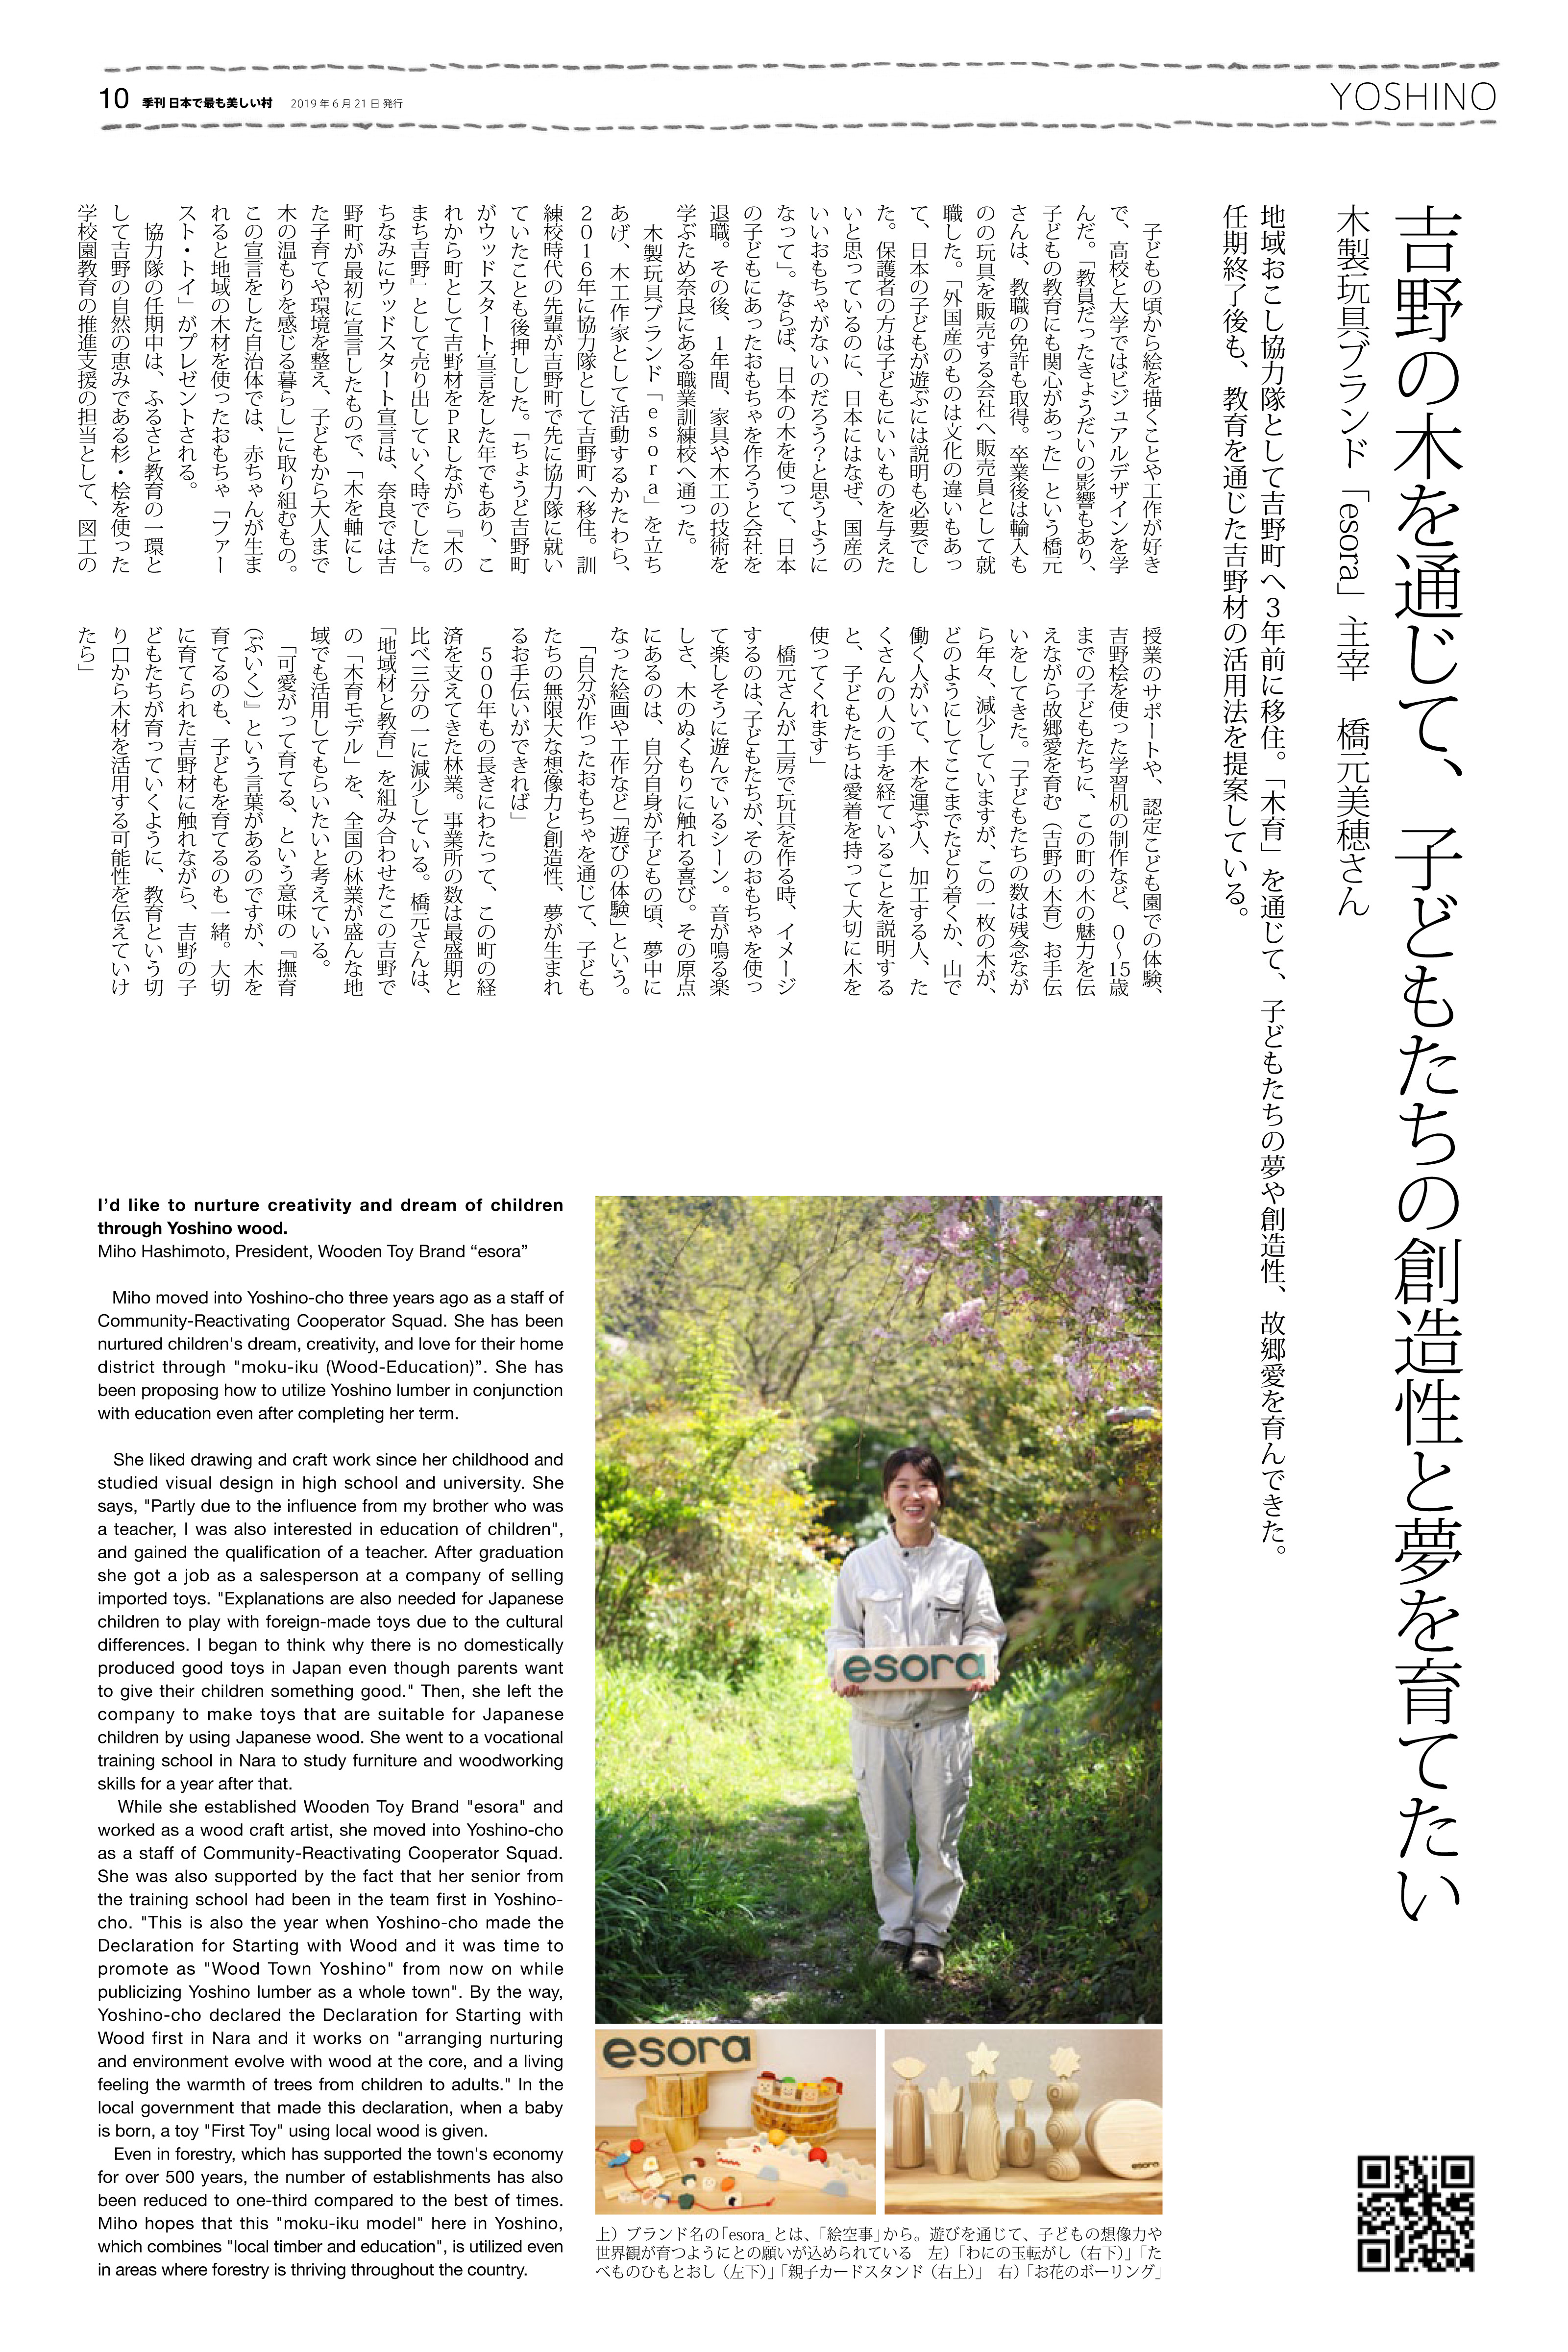 「日本で最も美しい村」連合 季刊誌 vol.28 2019夏 に掲載されました。